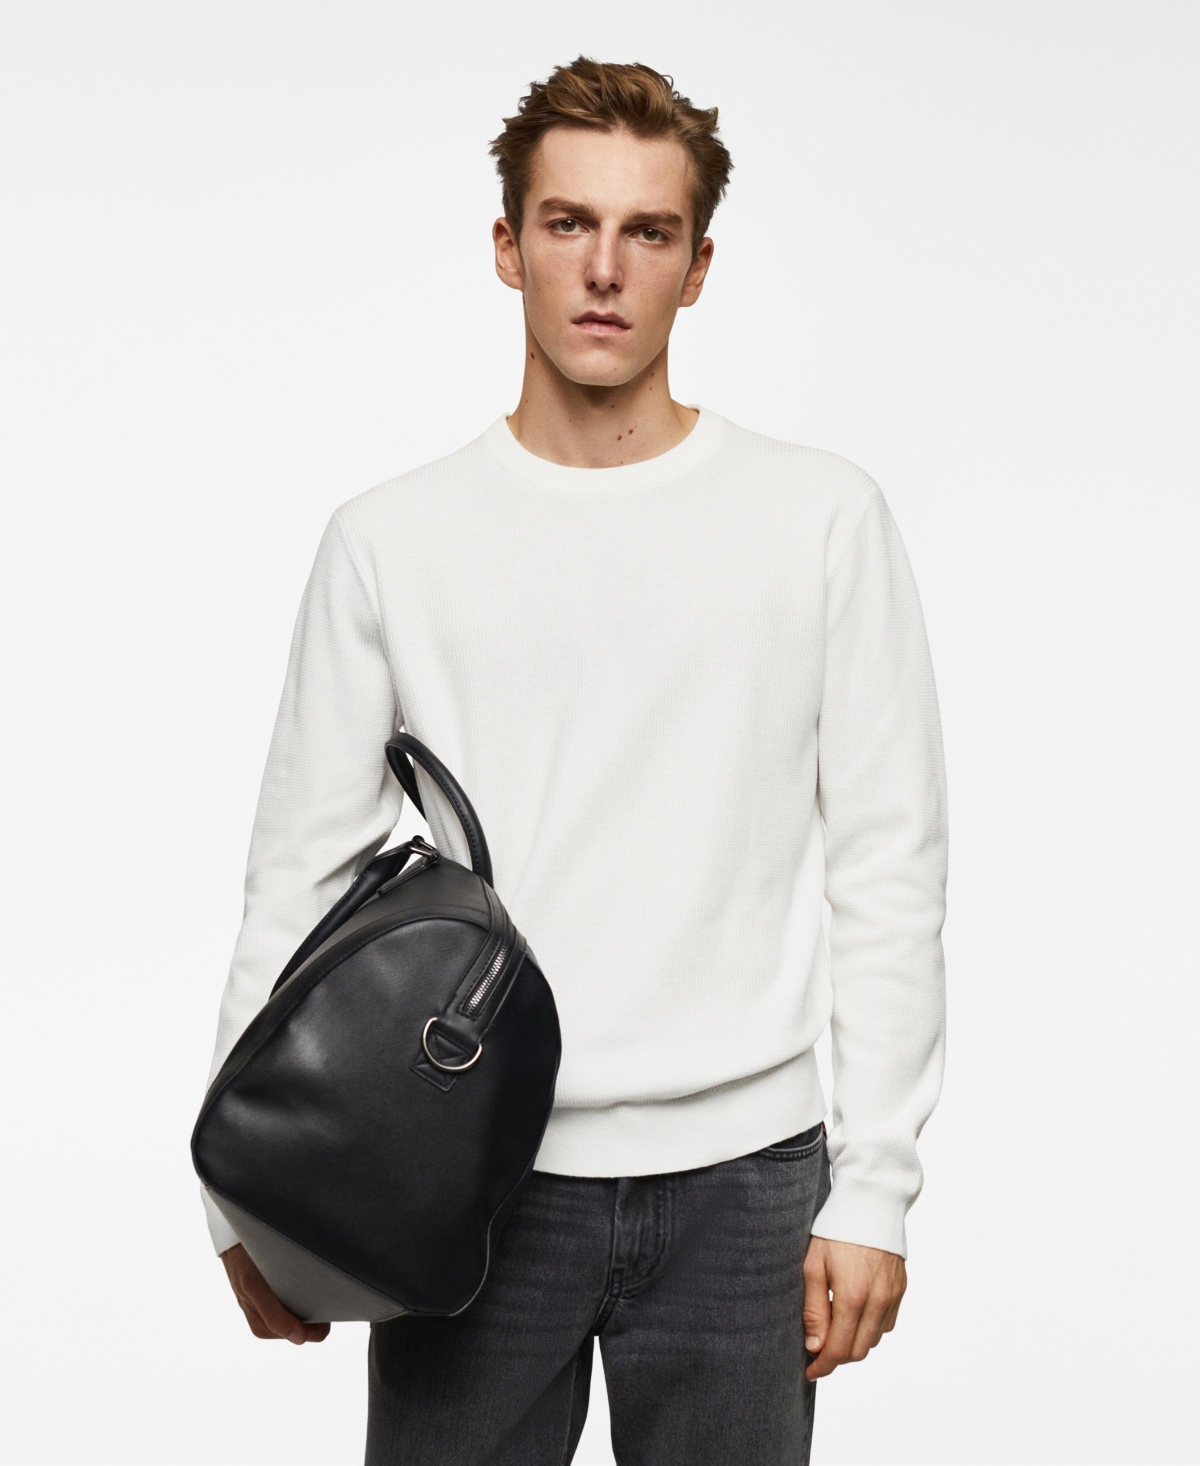 Men's Structured Cotton Sweater - Dark Navy